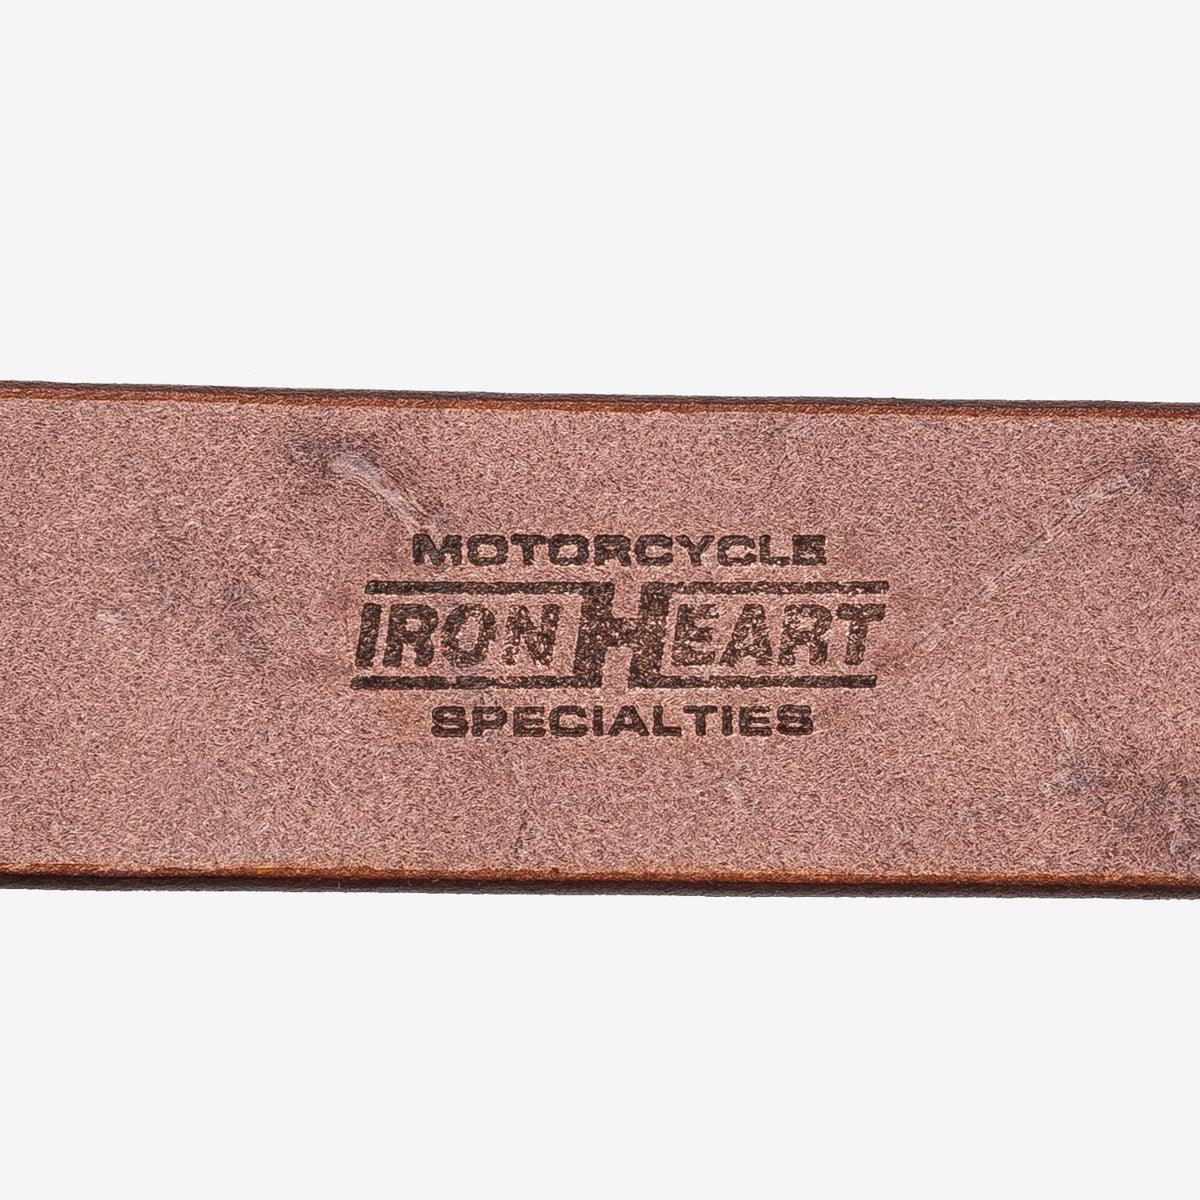 IHB-10-BRN - Heavy Duty "Tochigi" Leather Belt - Brown